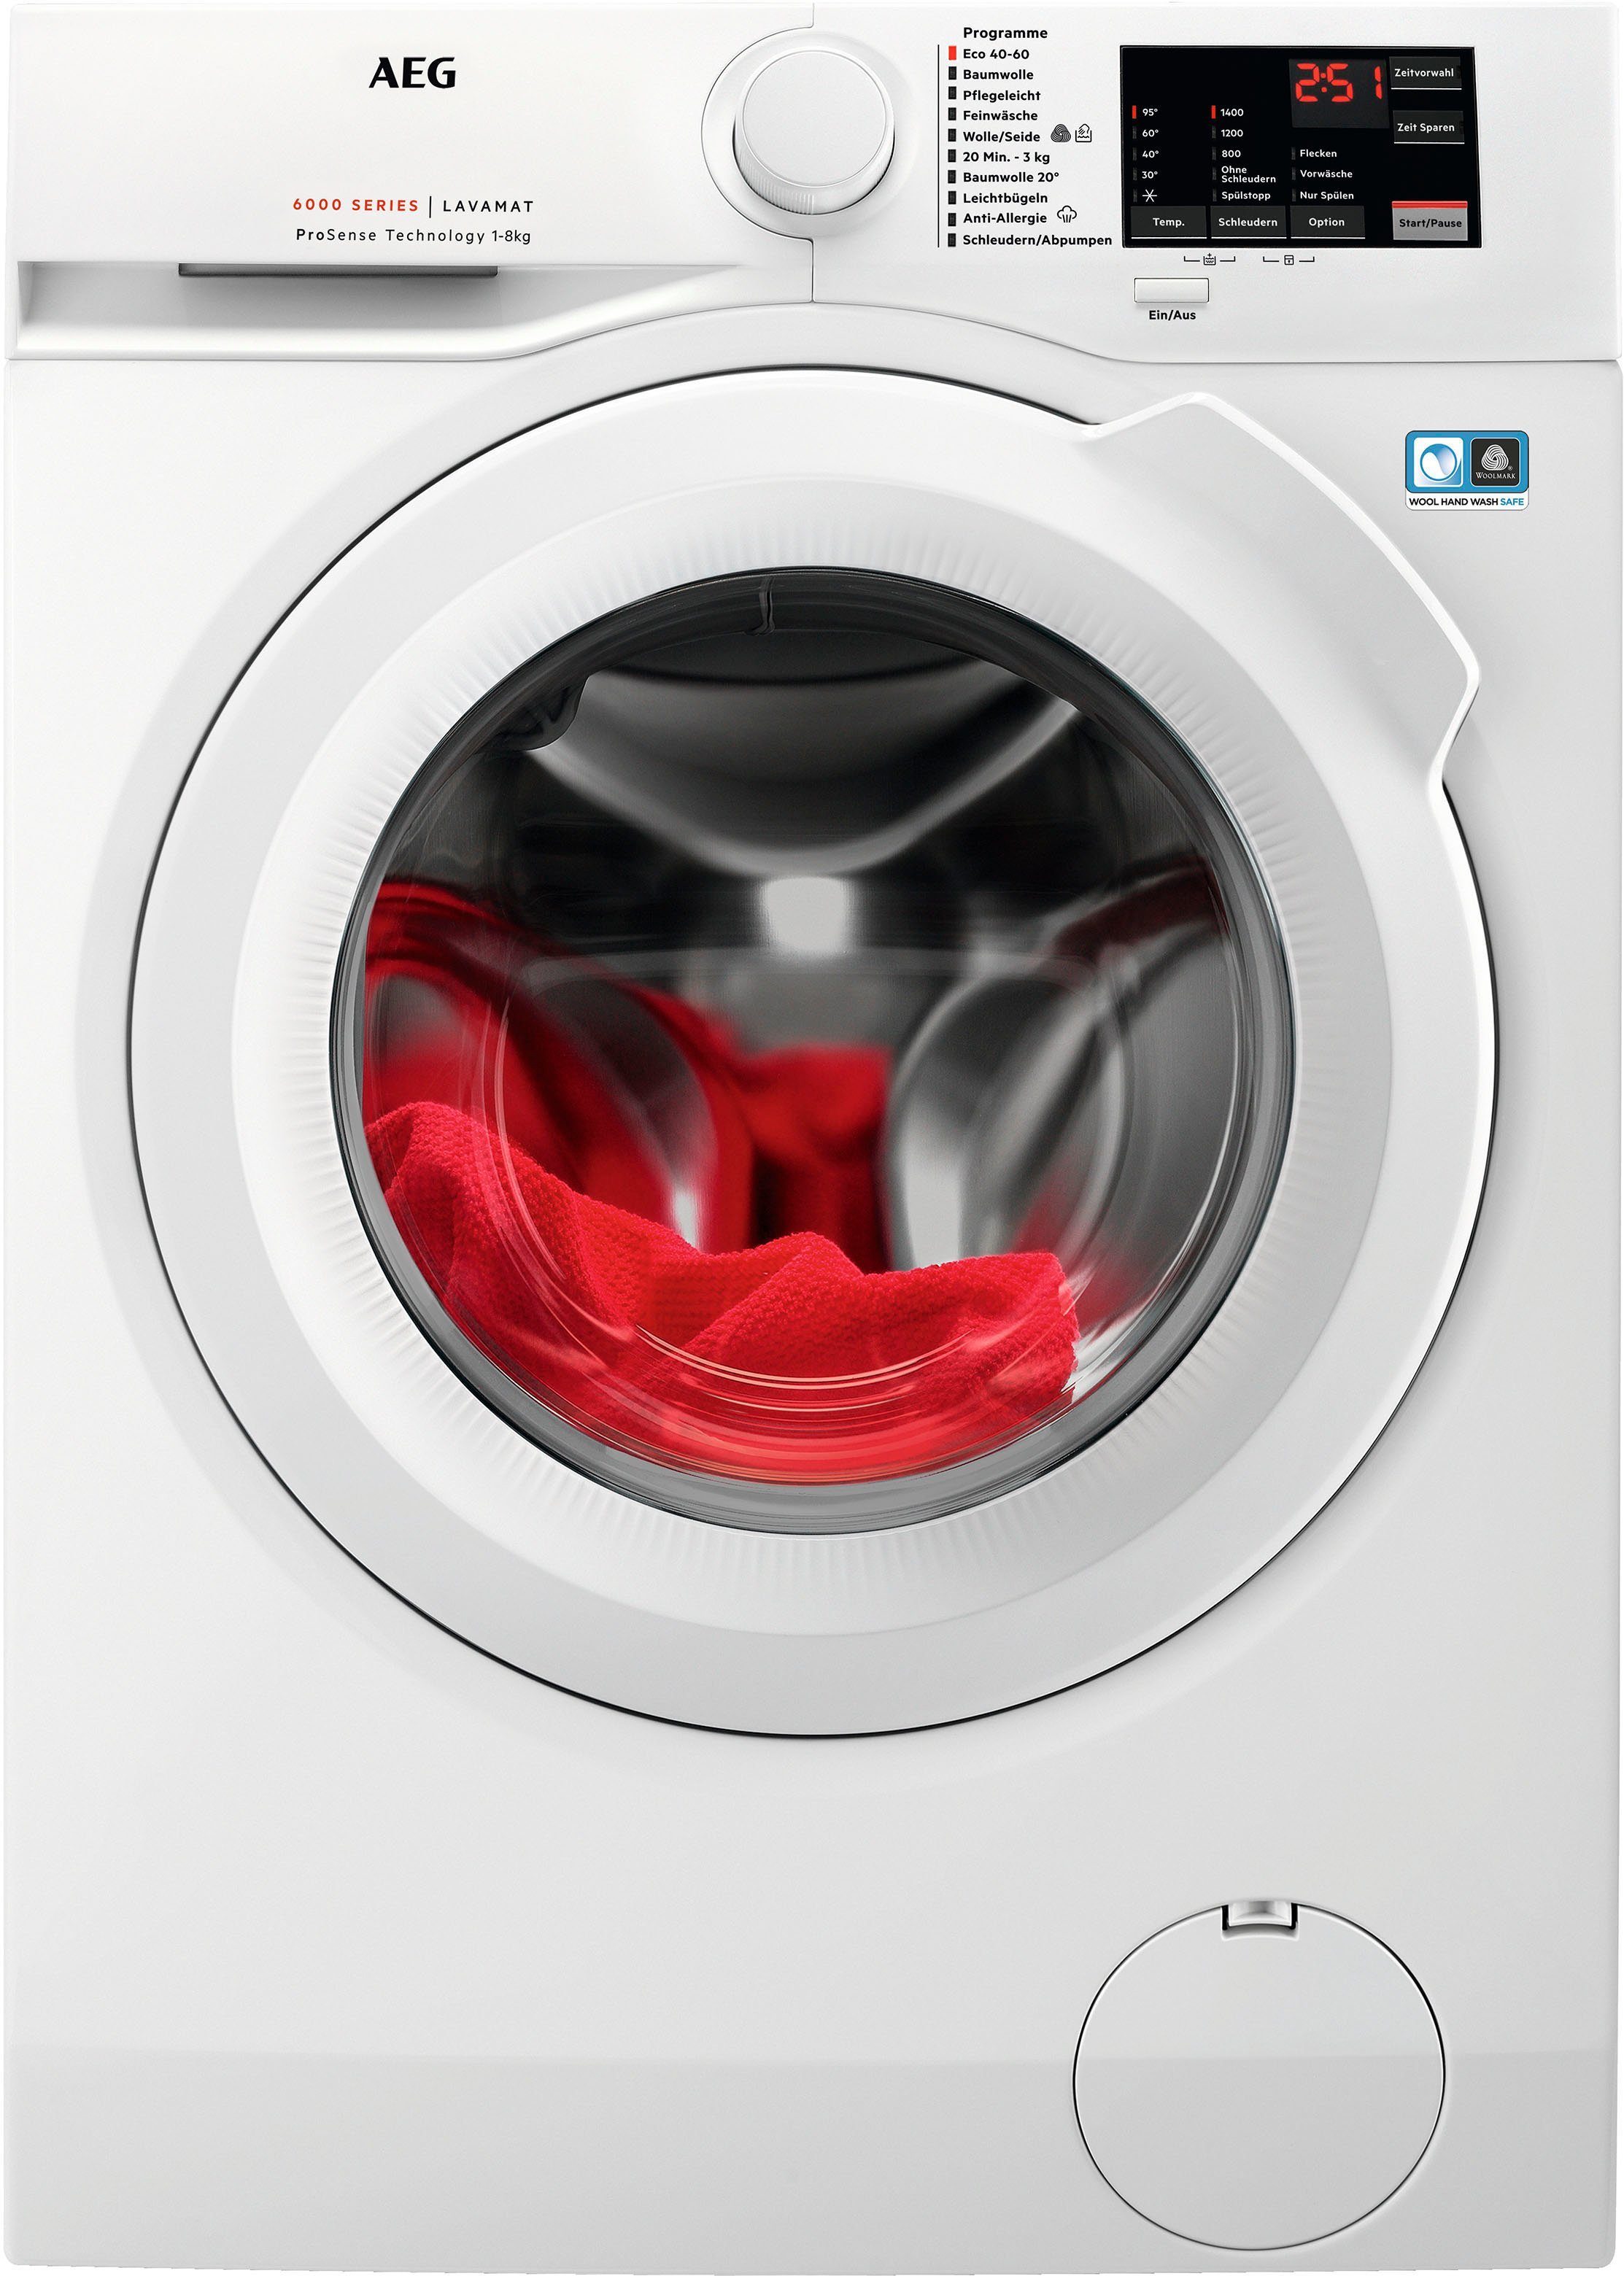 L6FBA51480 kg, Programm mit Anti-Allergie Dampf 1400 AEG Waschmaschine 914913590, U/min, Hygiene-/ 8